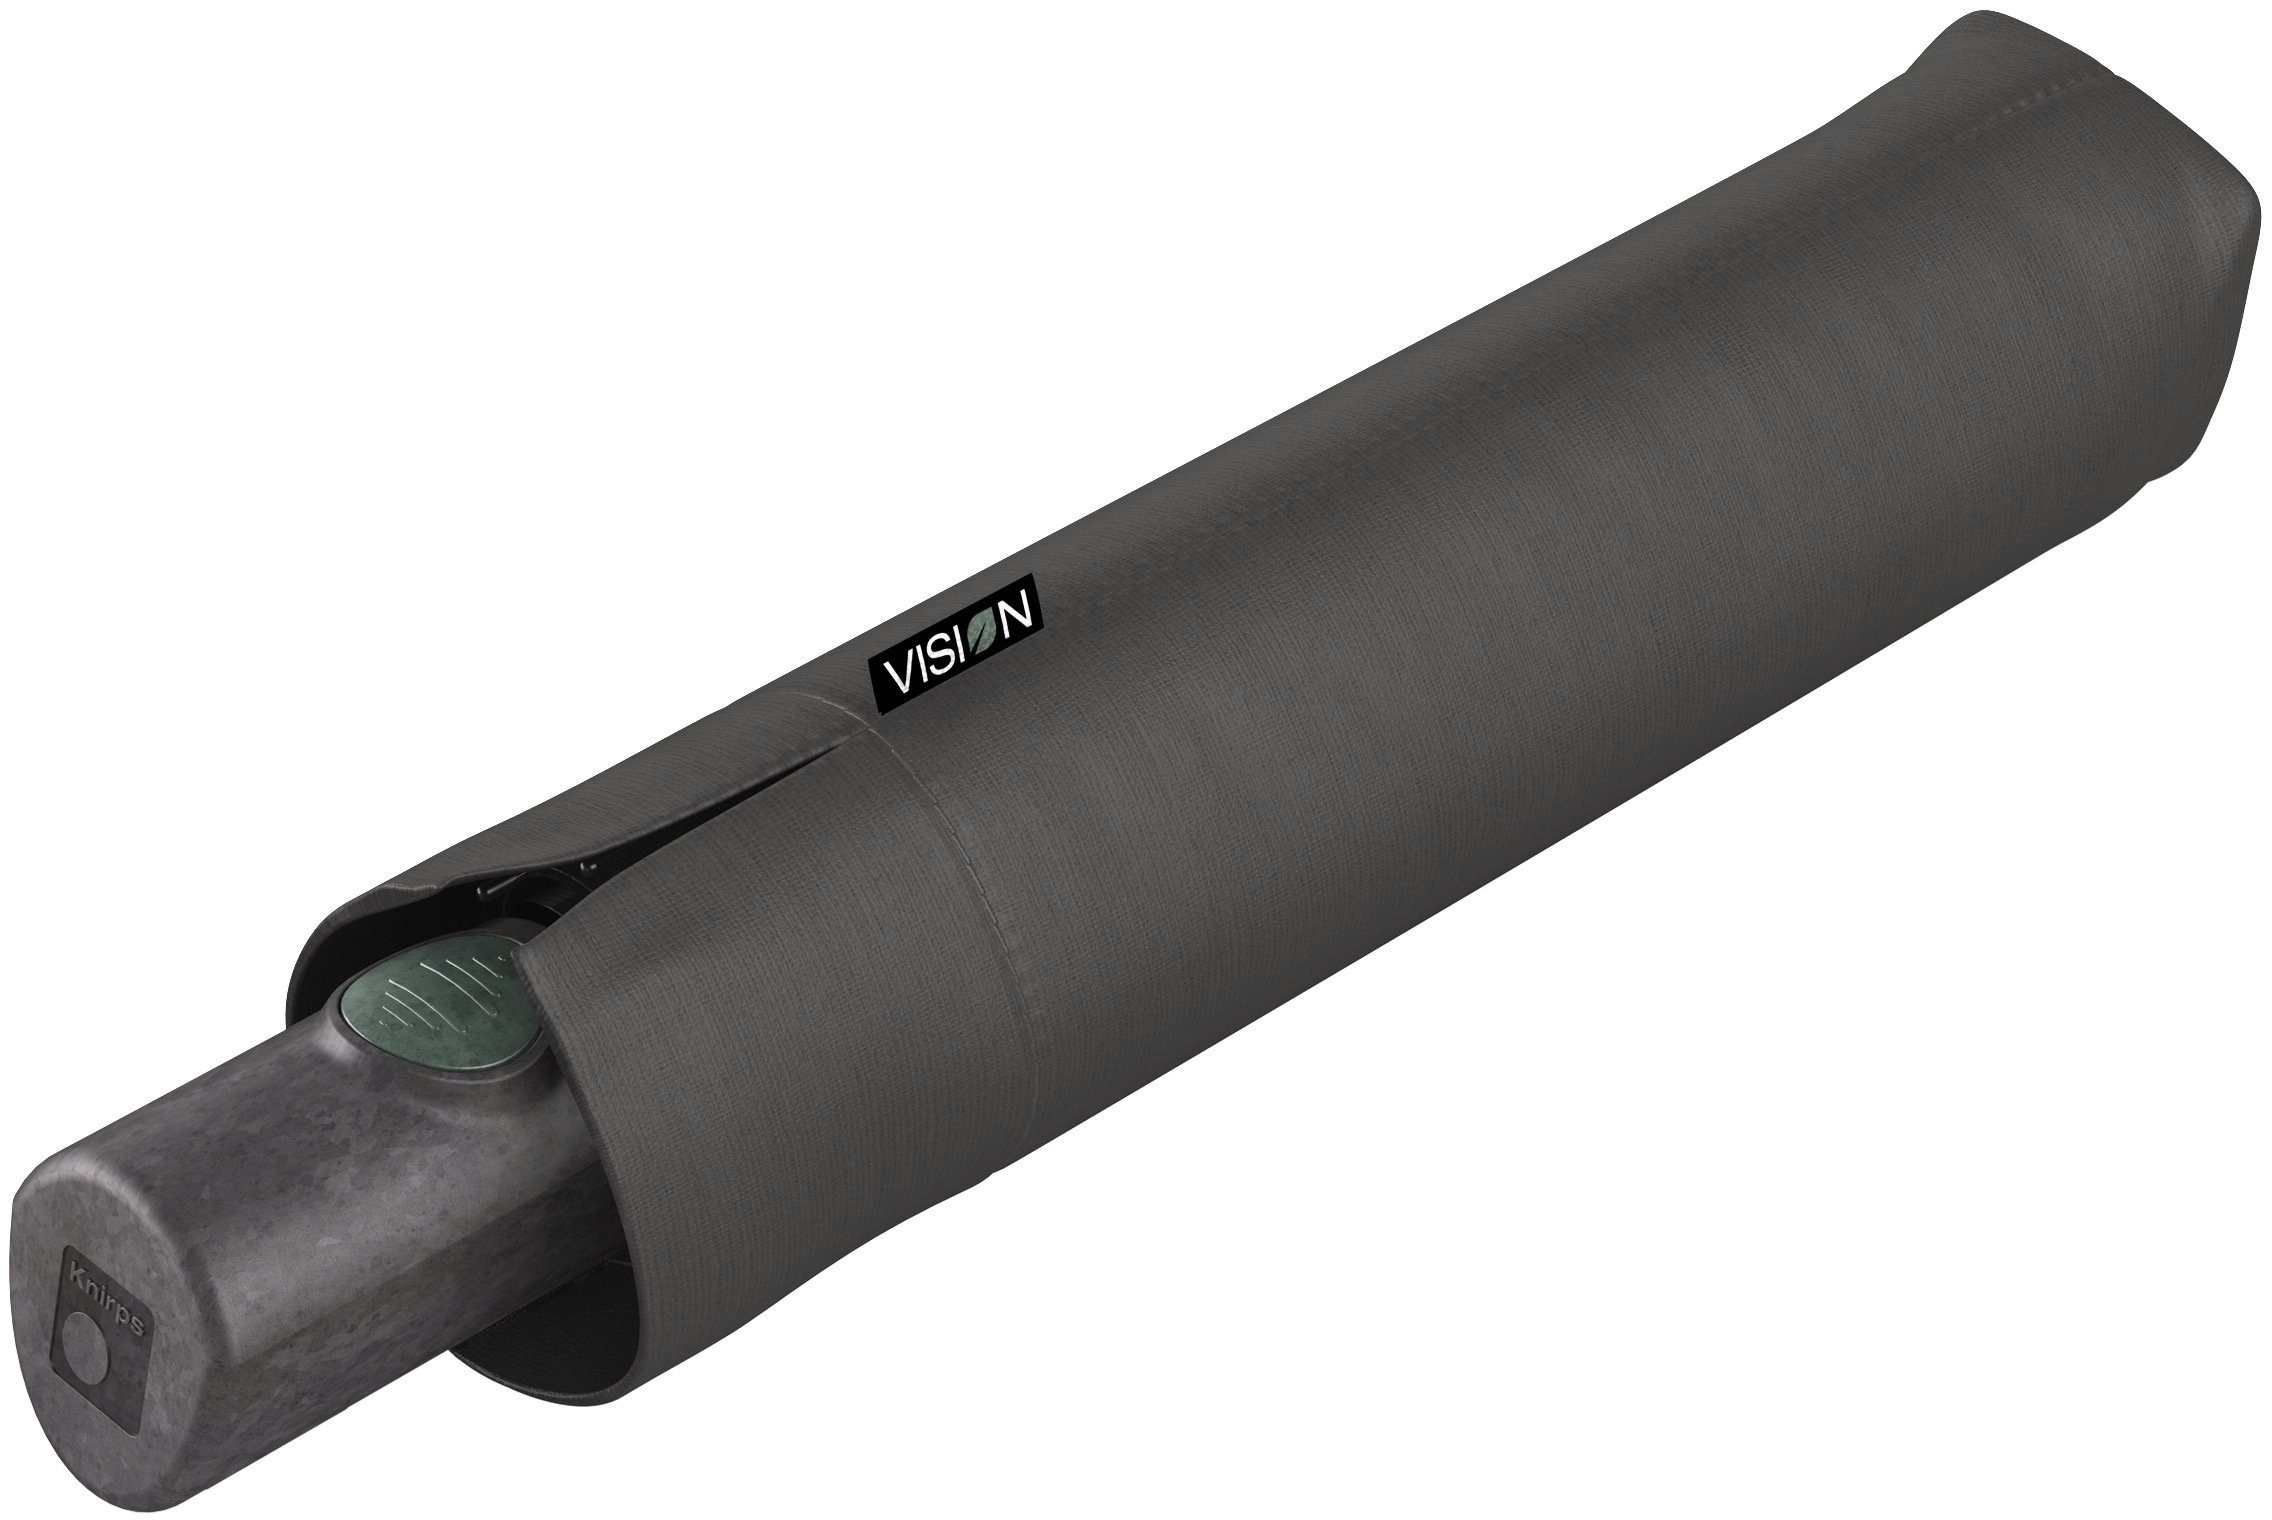 Knirps® Taschenregenschirm Vision aus Duomatic, recyceltem Dust, PET Schirmdach